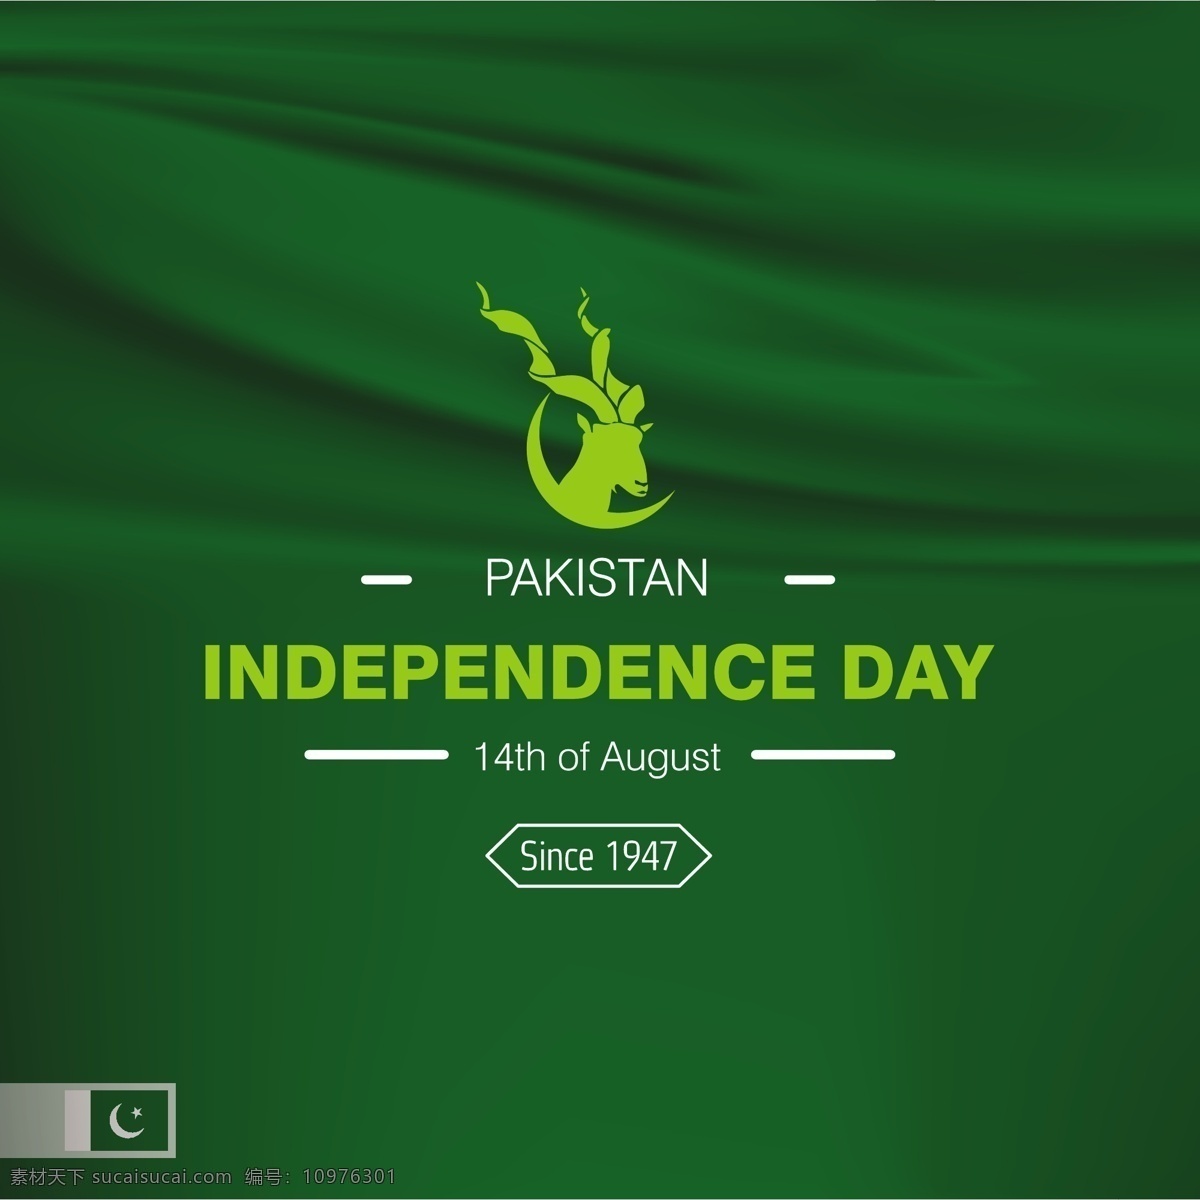 巴基斯坦 独立日 背景 快乐 壁纸 庆典 节日 节日快乐 国家 身份 自由 文化 亚洲 庆祝 日 革命 政府